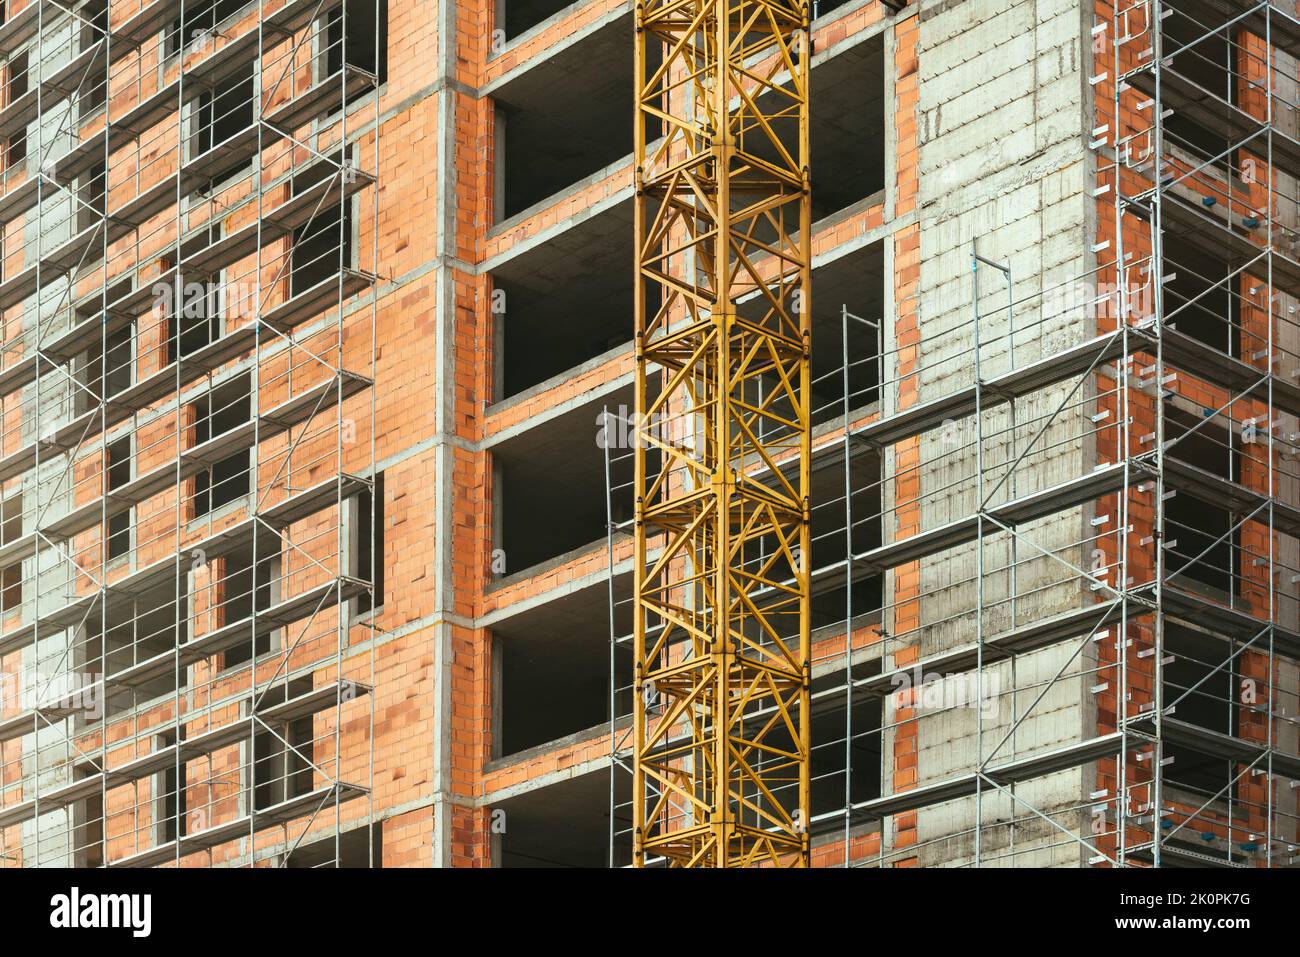 Bauindustrie und Wohnungsbau Entwicklung, Gerüste rund um hohe gebaute Struktur aus Beton und Lehm Blöcke in Wohn Stockfoto